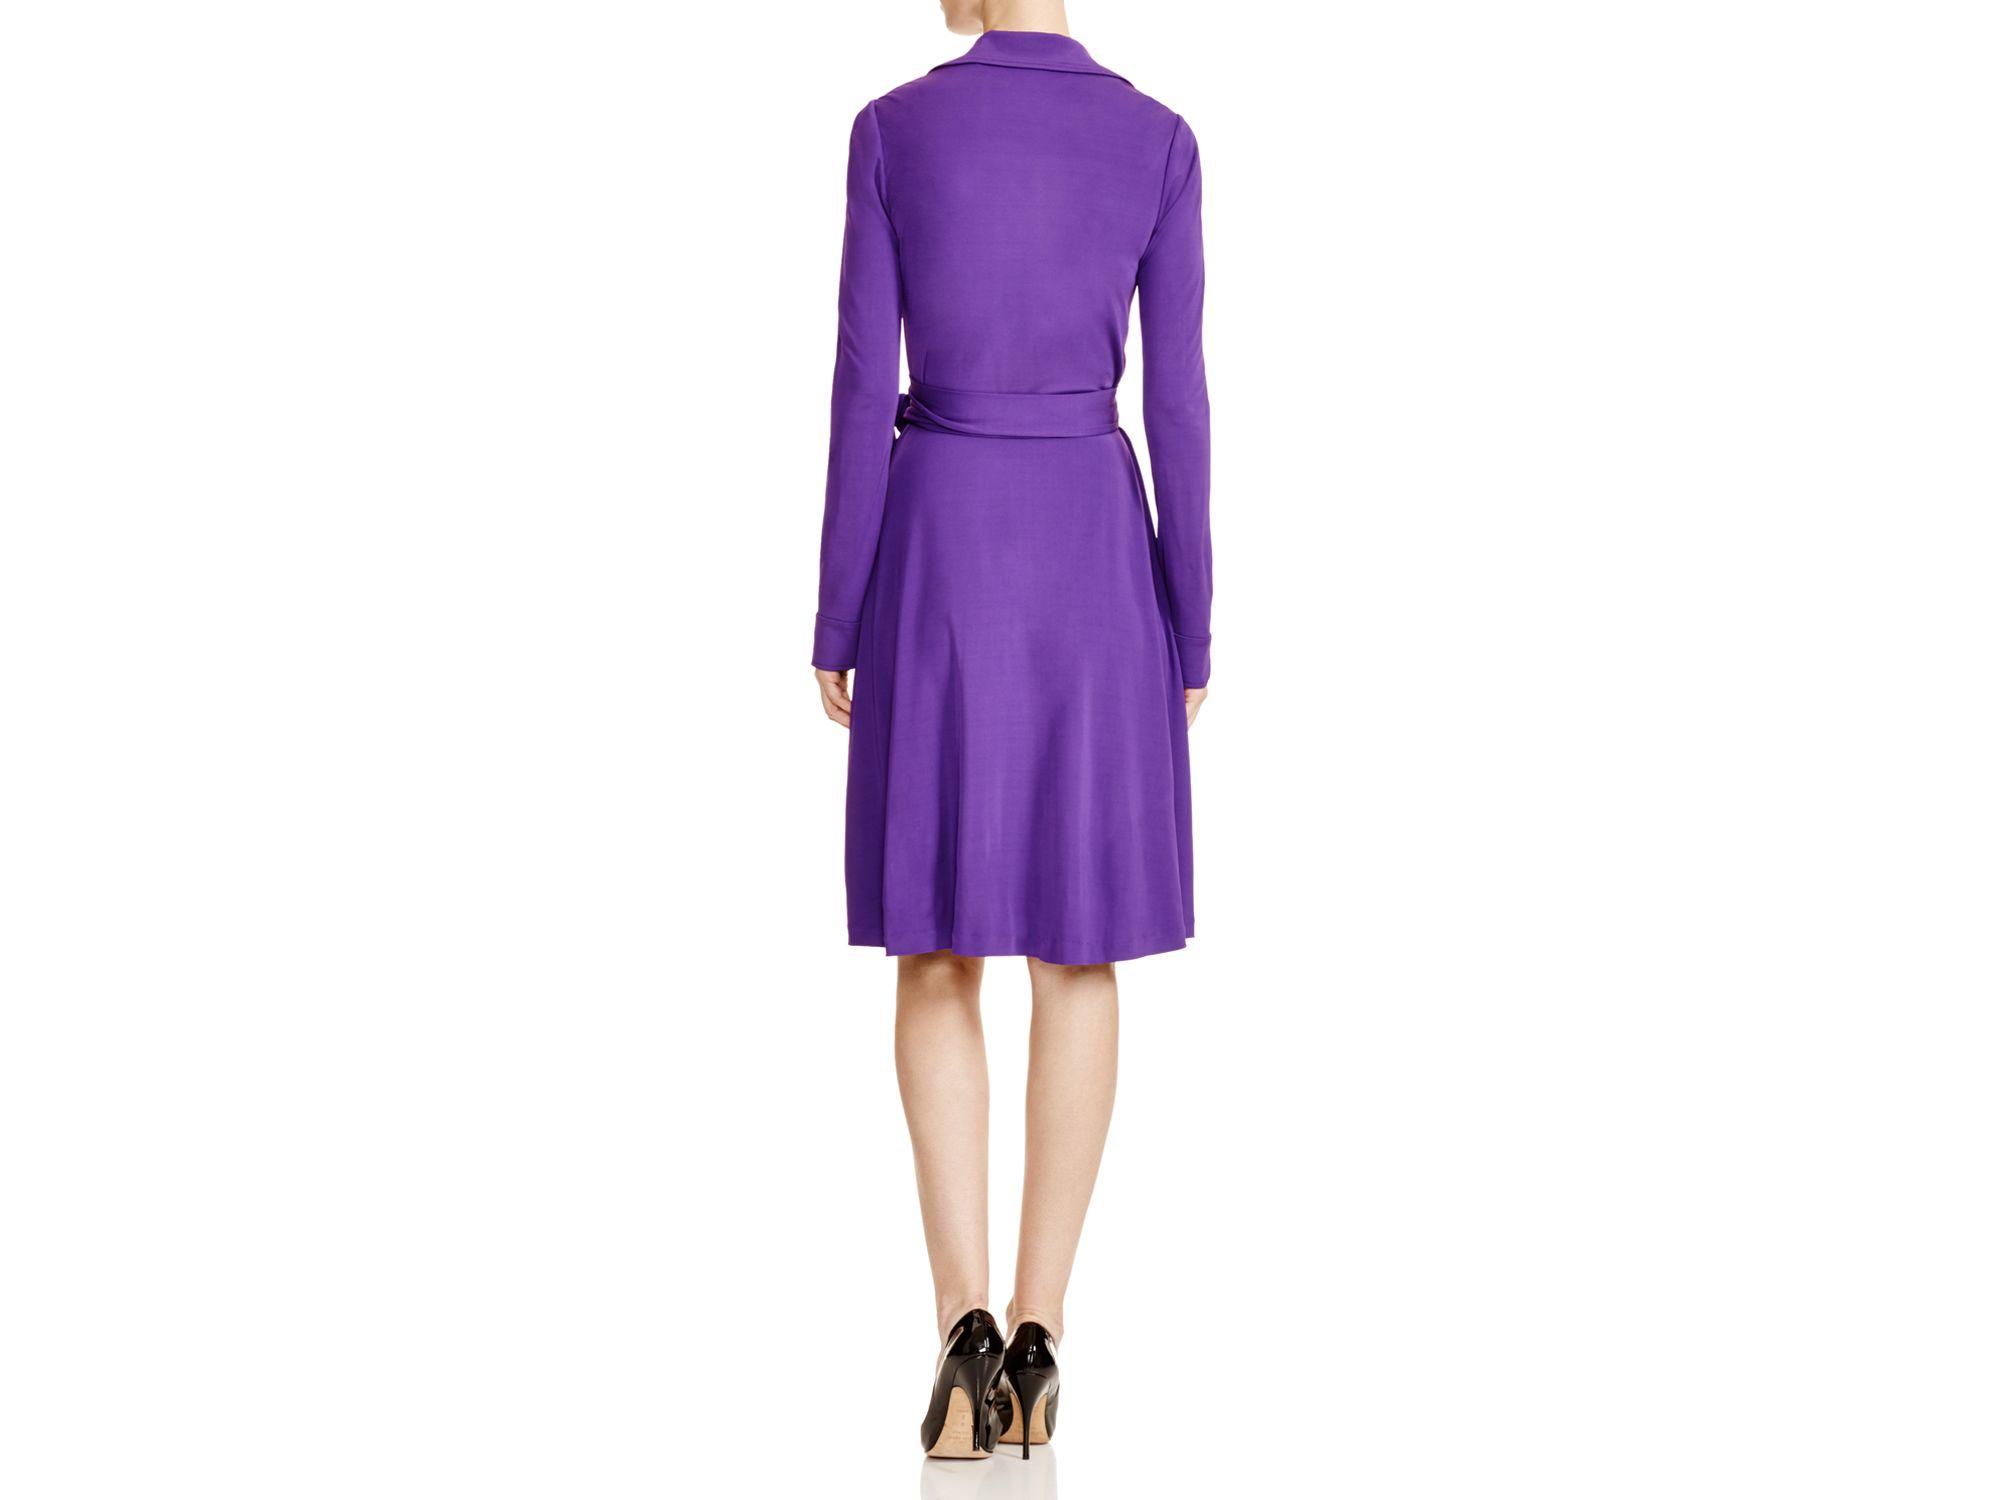 Diane von Furstenberg Long Sleeve Wrap Dress in Purple | Lyst